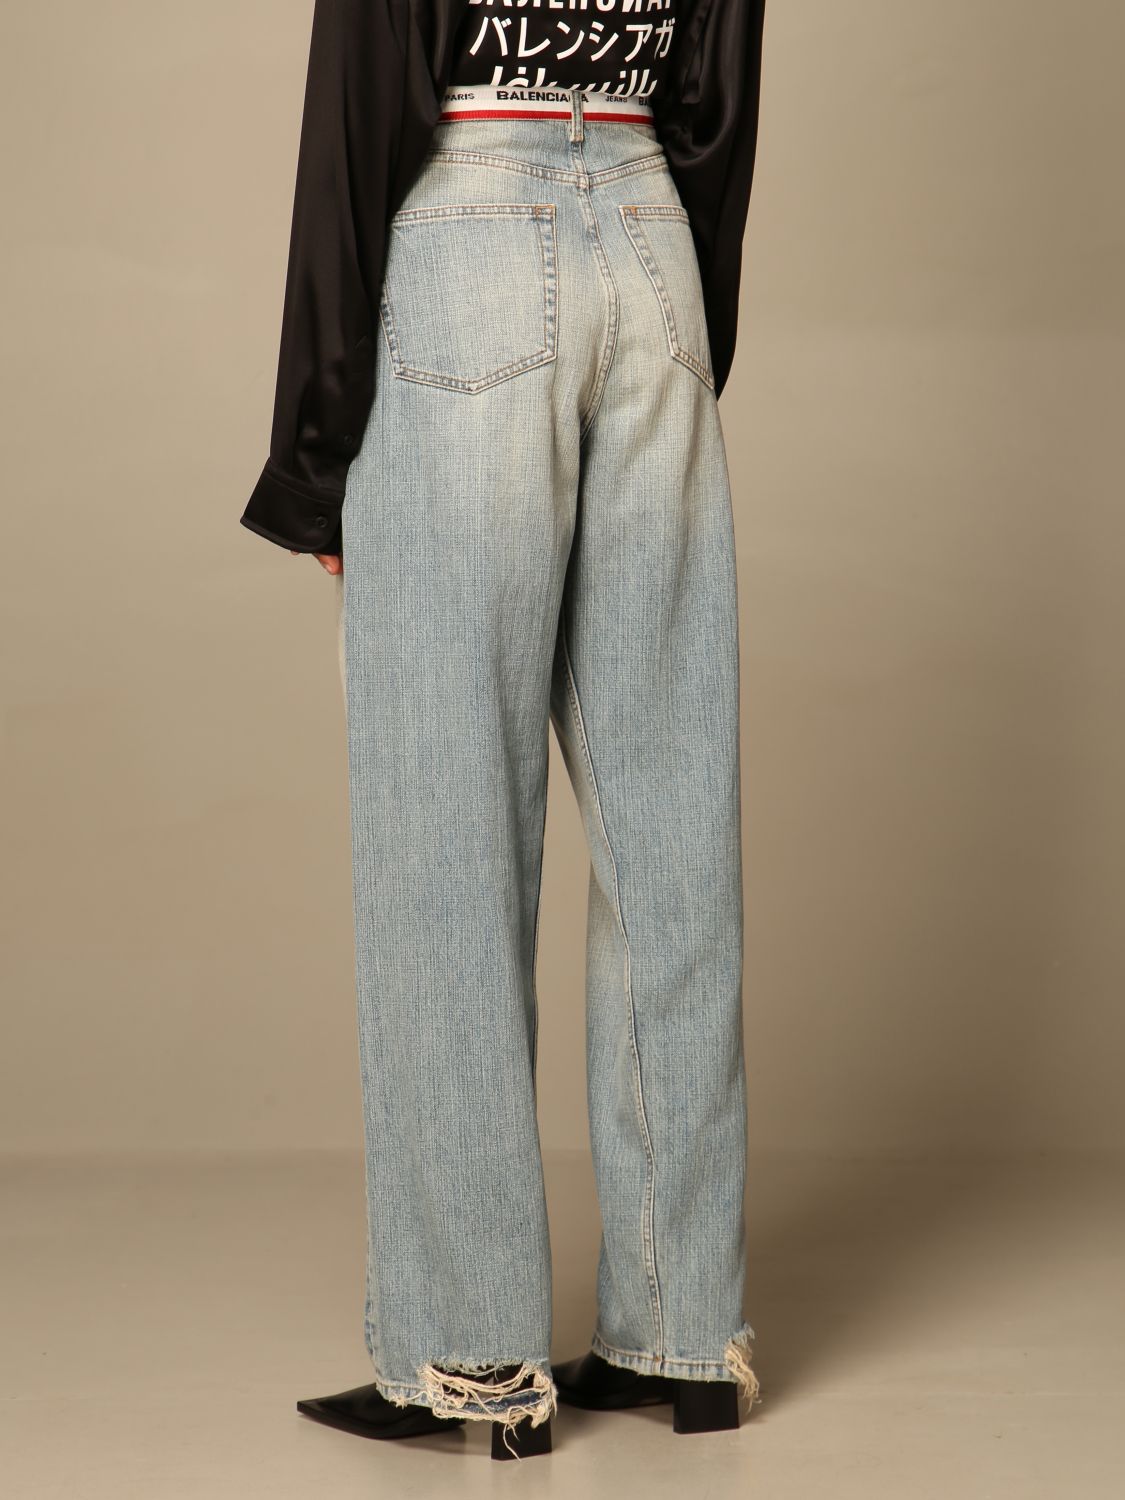 BALENCIAGA: Jeans a vita alta con logo | Jeans Balenciaga Donna Blue |  Jeans Balenciaga 657615 TIW21 GIGLIO.COM